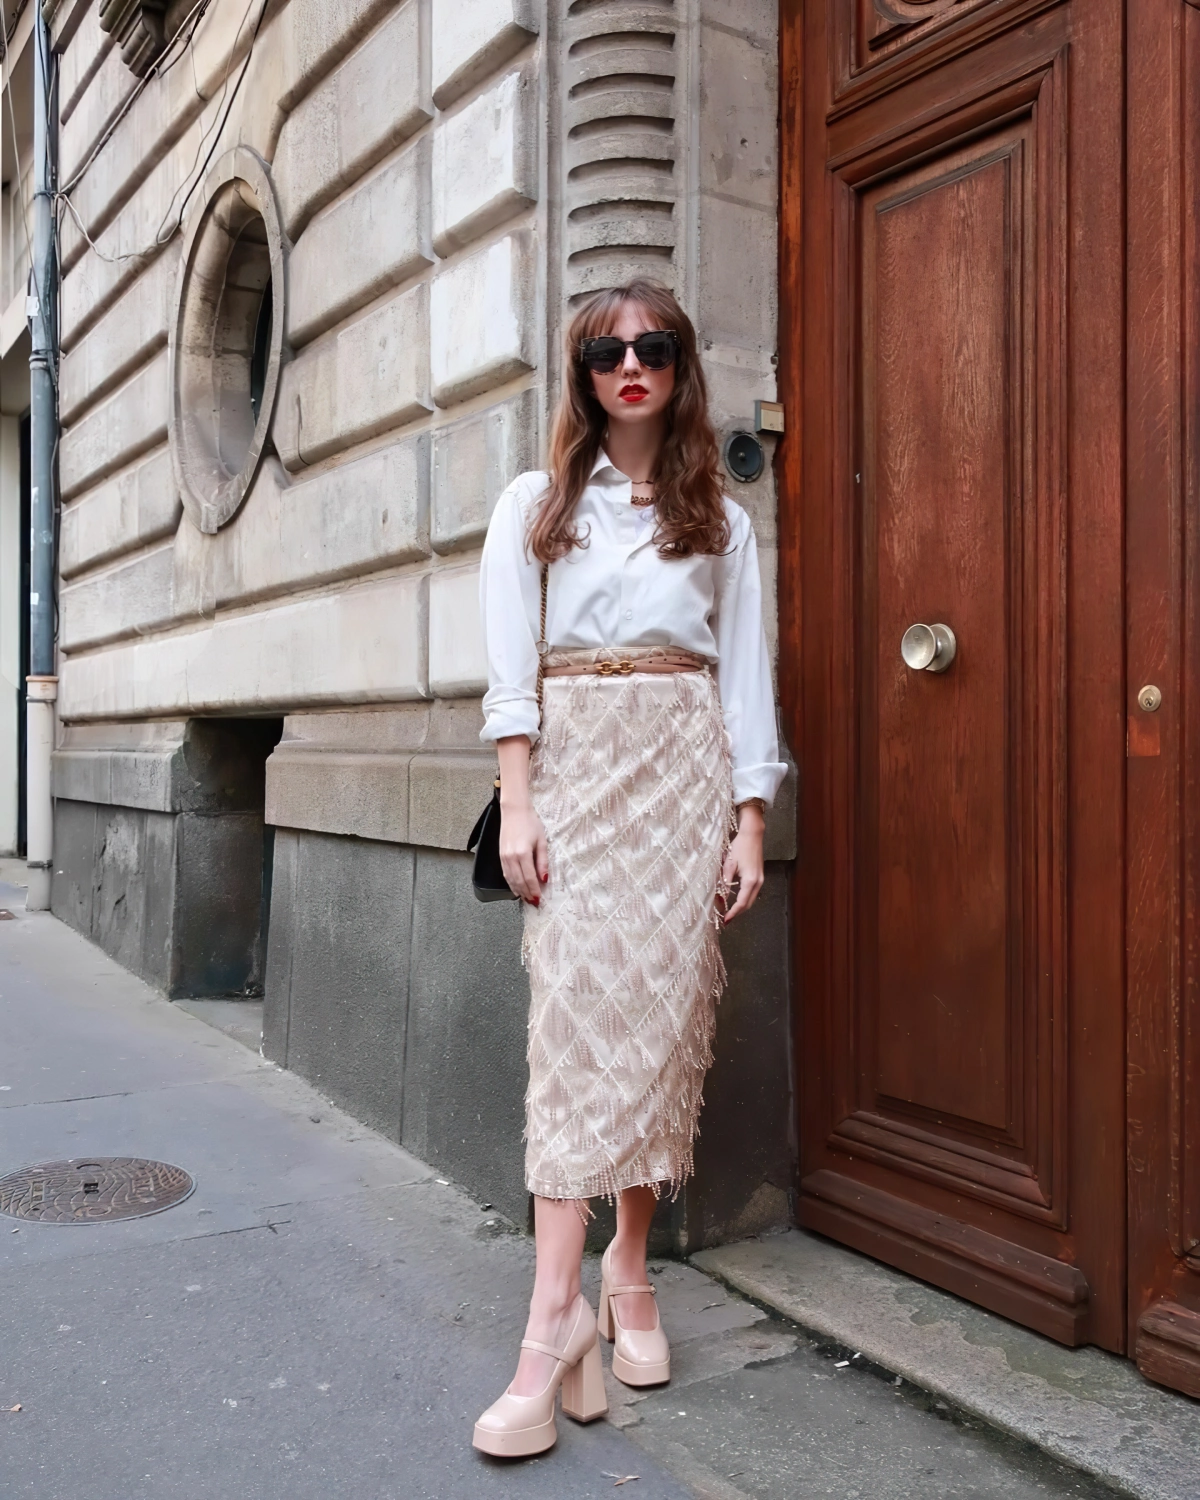 Jupe mi-longue : l’indispensable de votre dressing printemps-été pour look chic et moderne